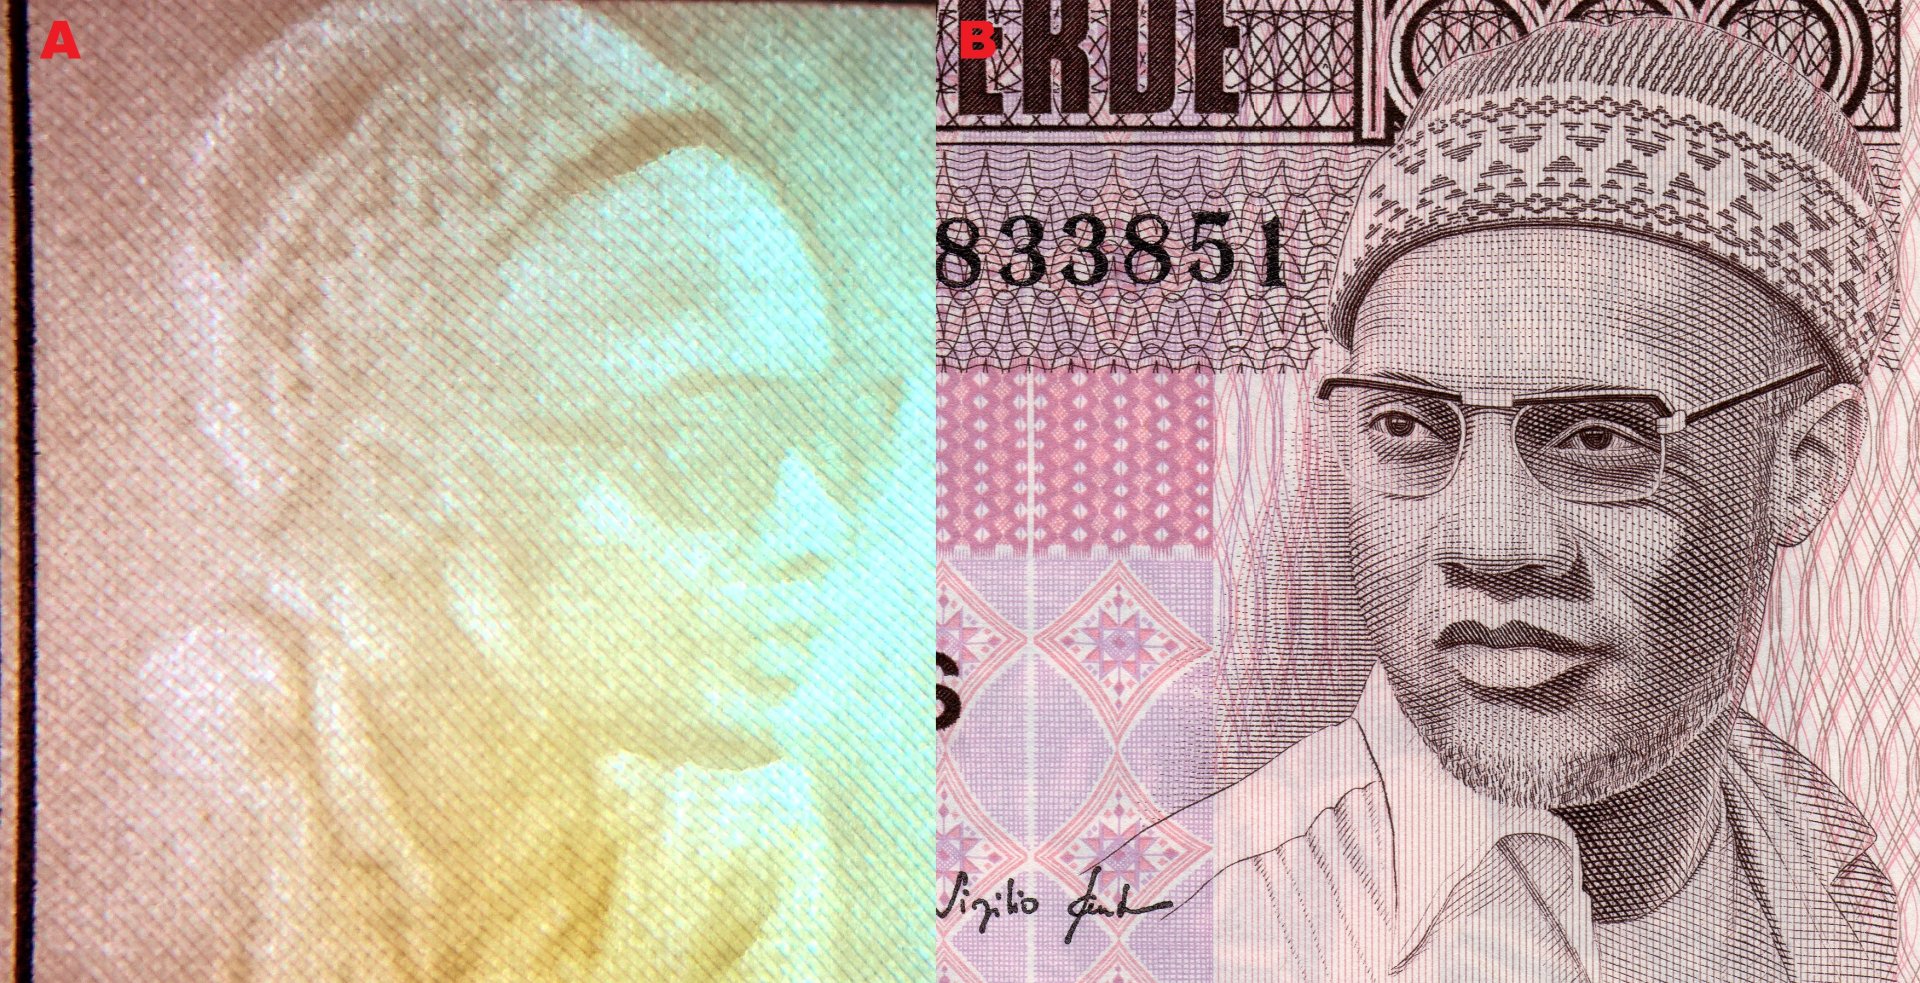 Obr. 3. A) Nesouhlasný portrétový vodoznak – Amílcar Cabral. B) Ústřední motiv averzu bankovky – Amílcar Cabral.